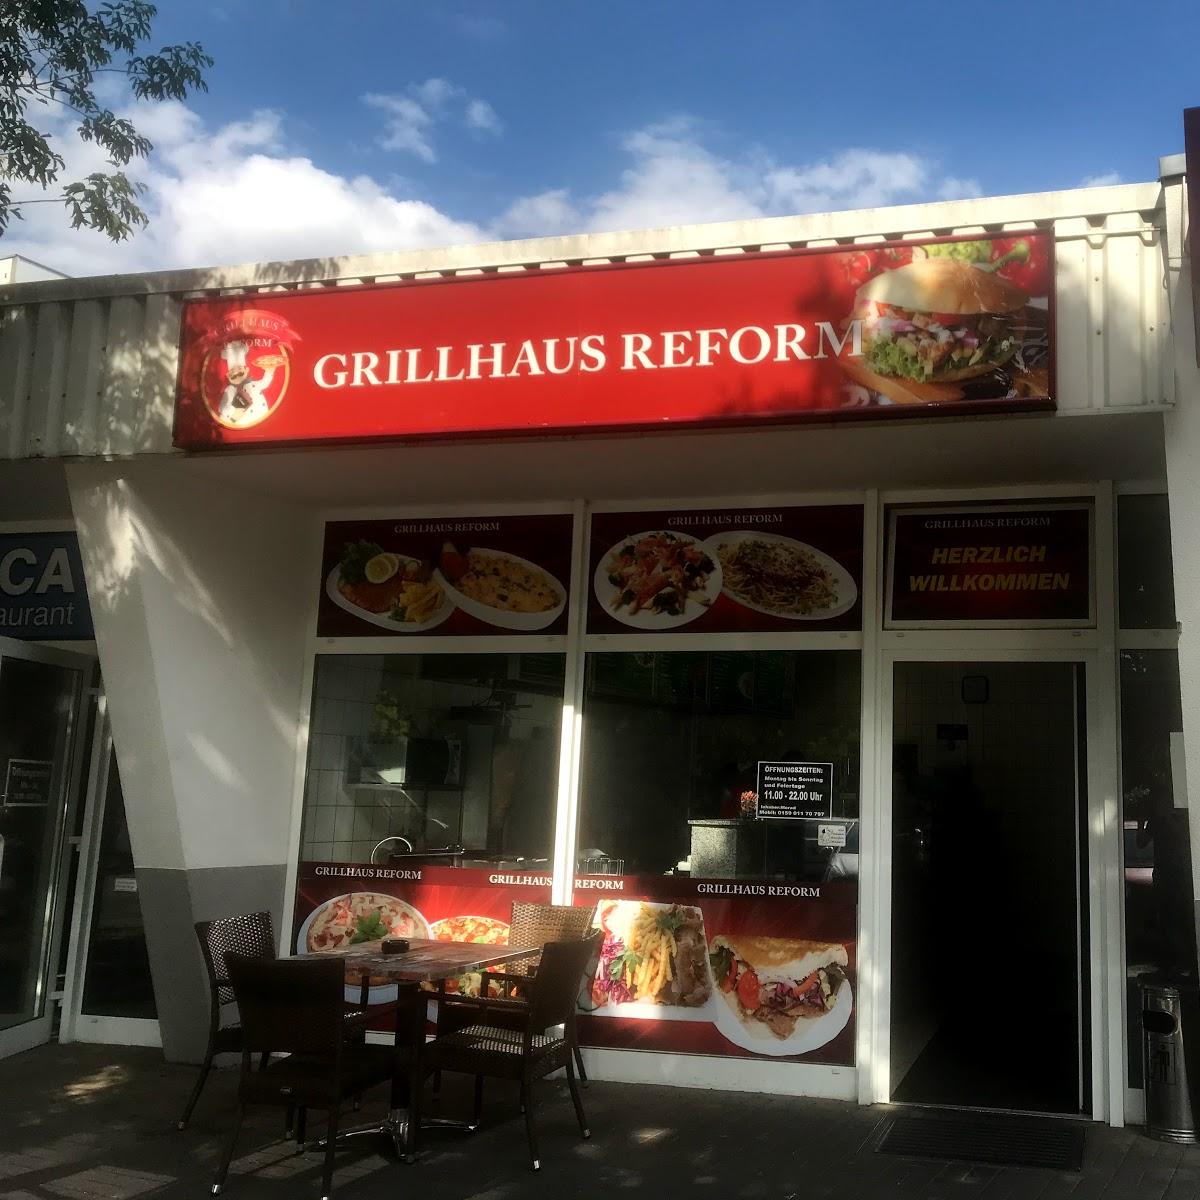 Restaurant "Grillhaus Reform" in Magdeburg